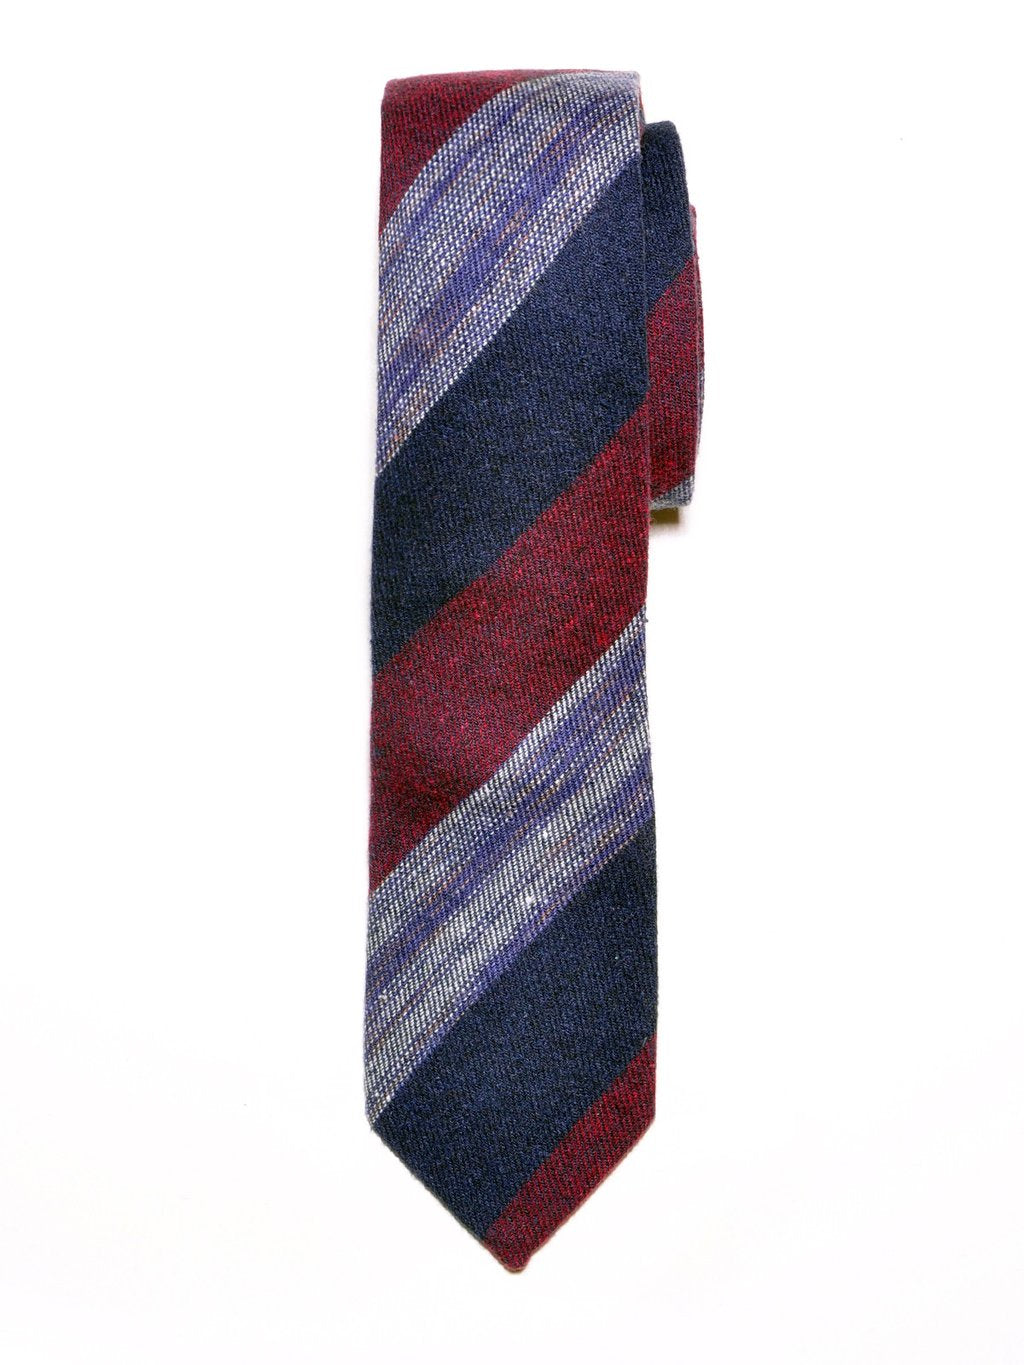 Navy Blue and Burgundy Block Stripe Cotton Tie